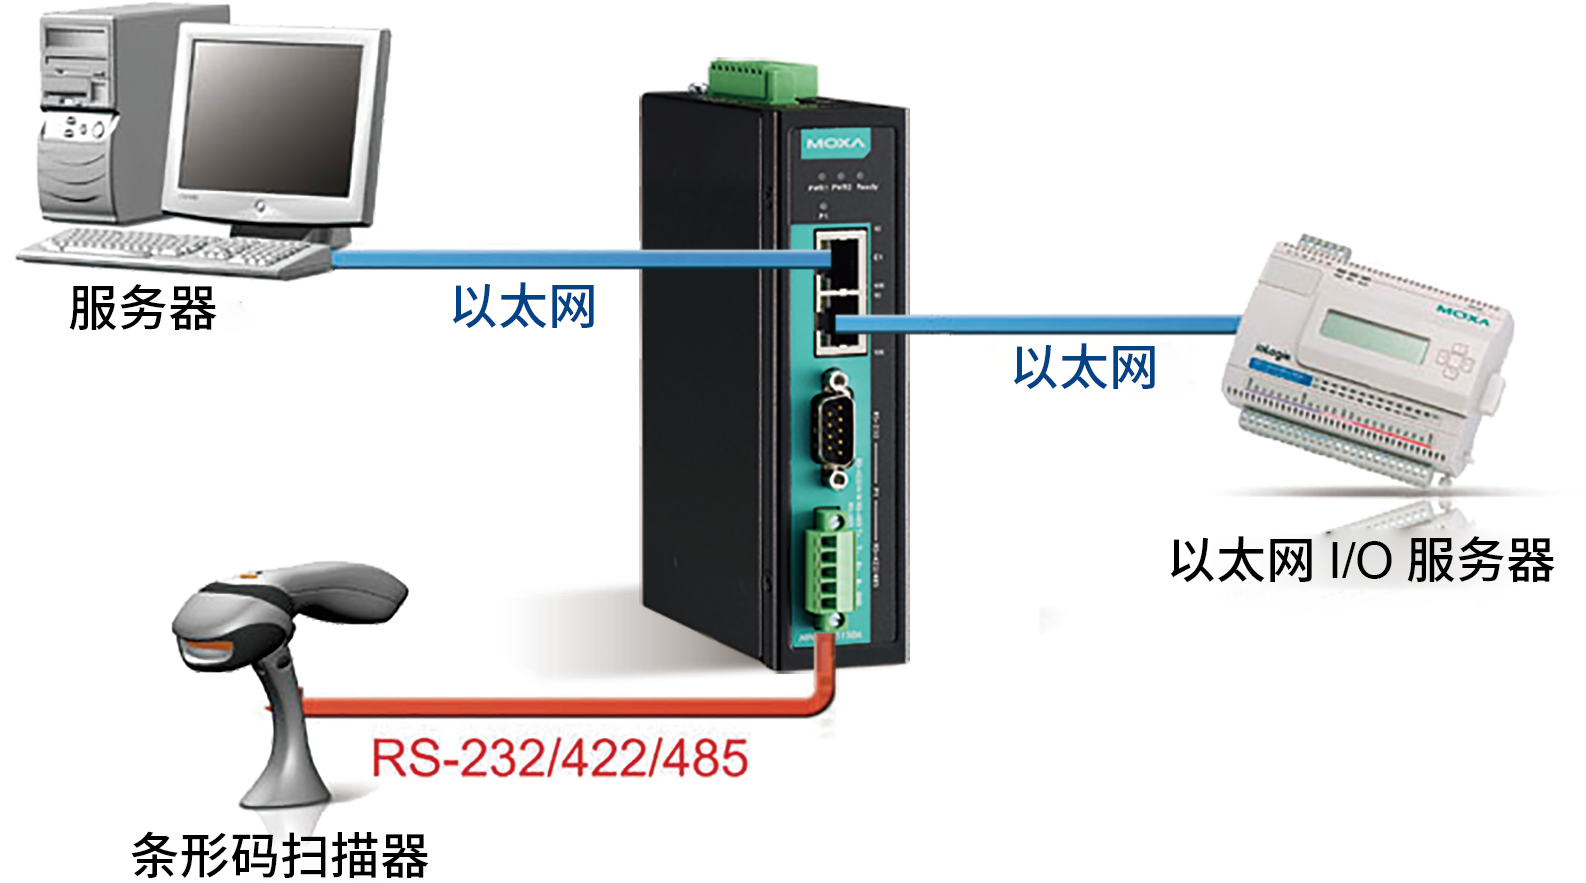 摩莎NPort IA5000A 系列串口设备联网服务器